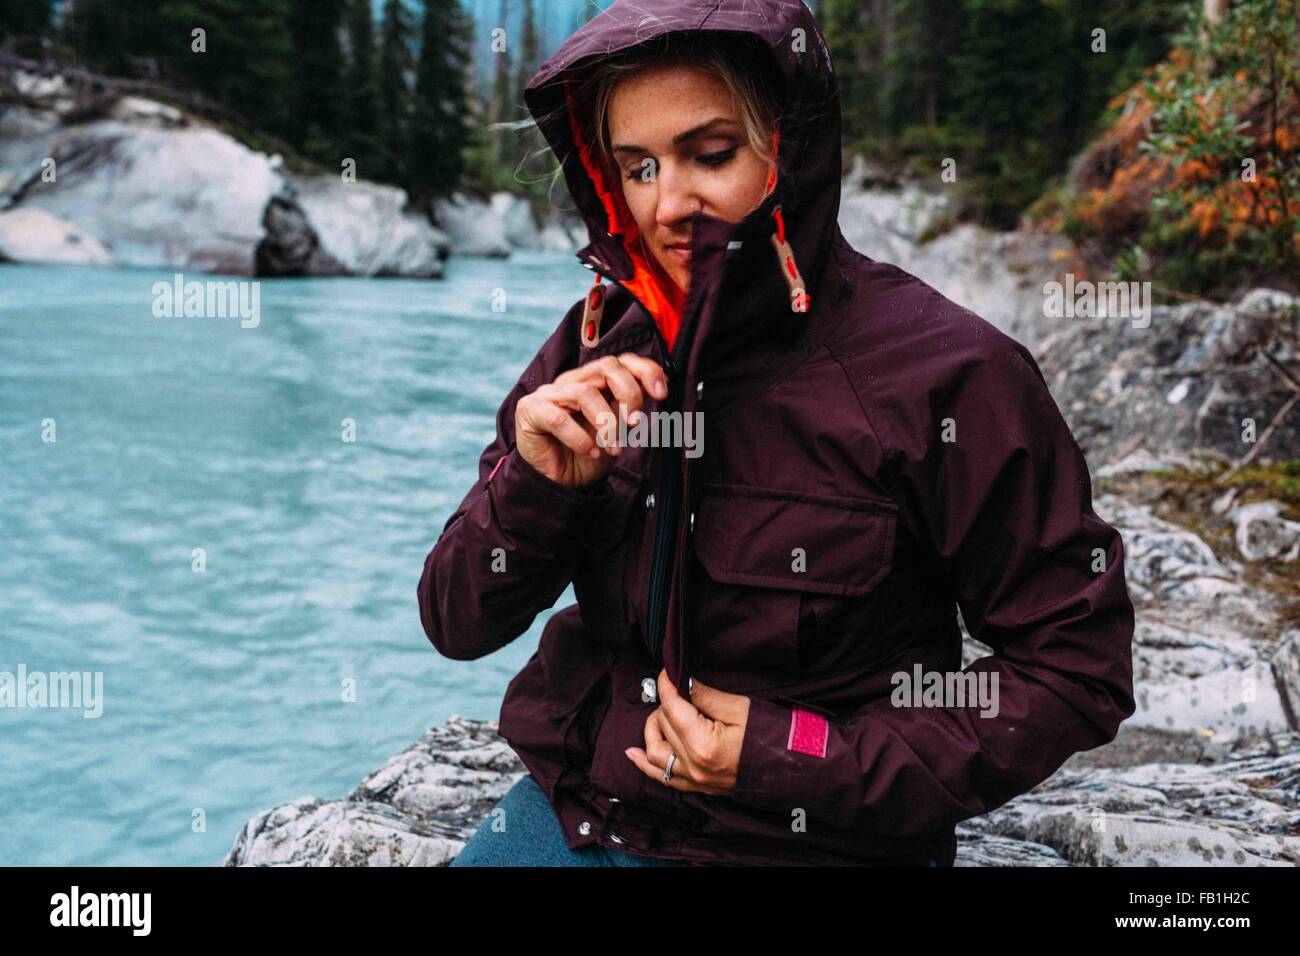 Mitte Erwachsene Frau von Gewässerrand Reißverschluß wasserdichte Jacke, Moraine Lake, Banff Nationalpark, Alberta Kanada Stockfoto